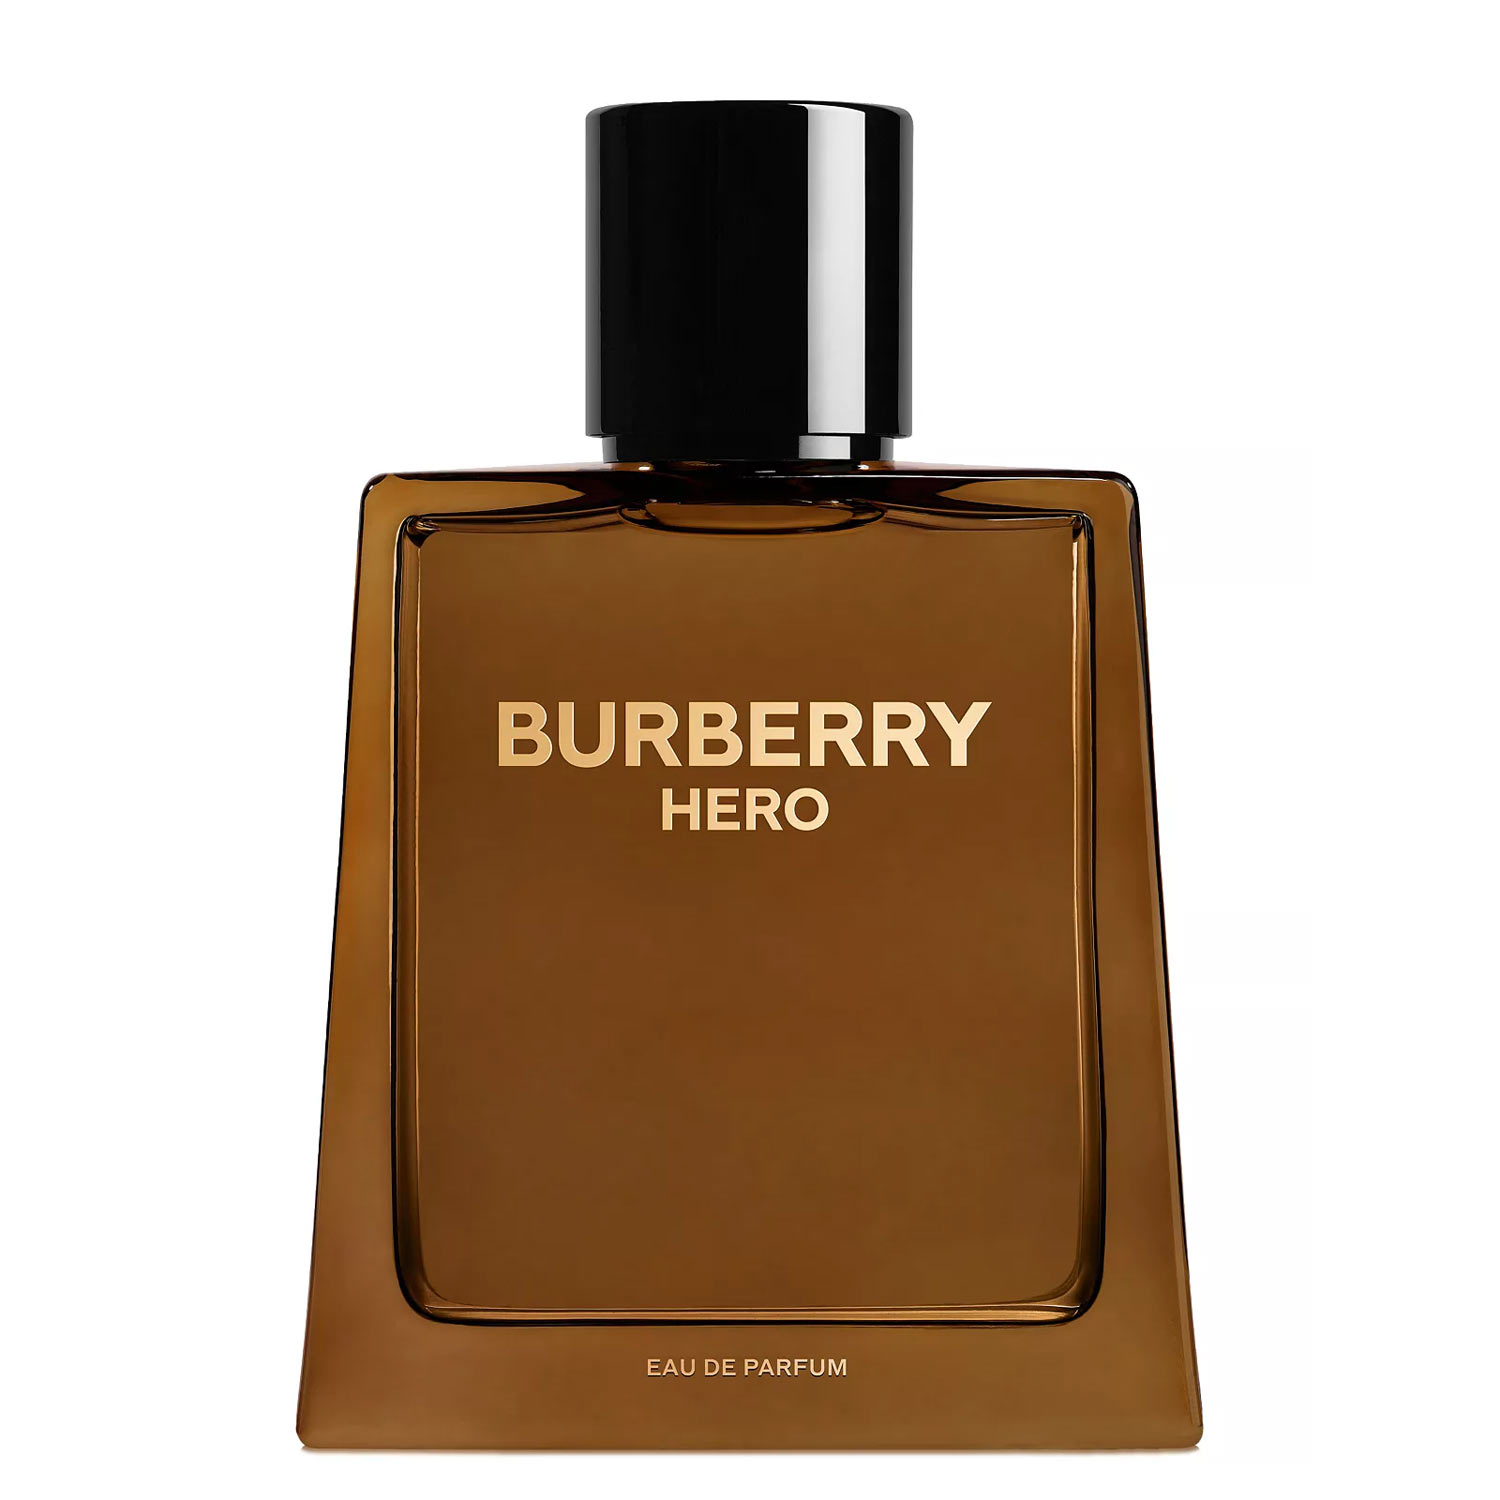 Burberry-Hero-Eau-de-Parfum-Burberry